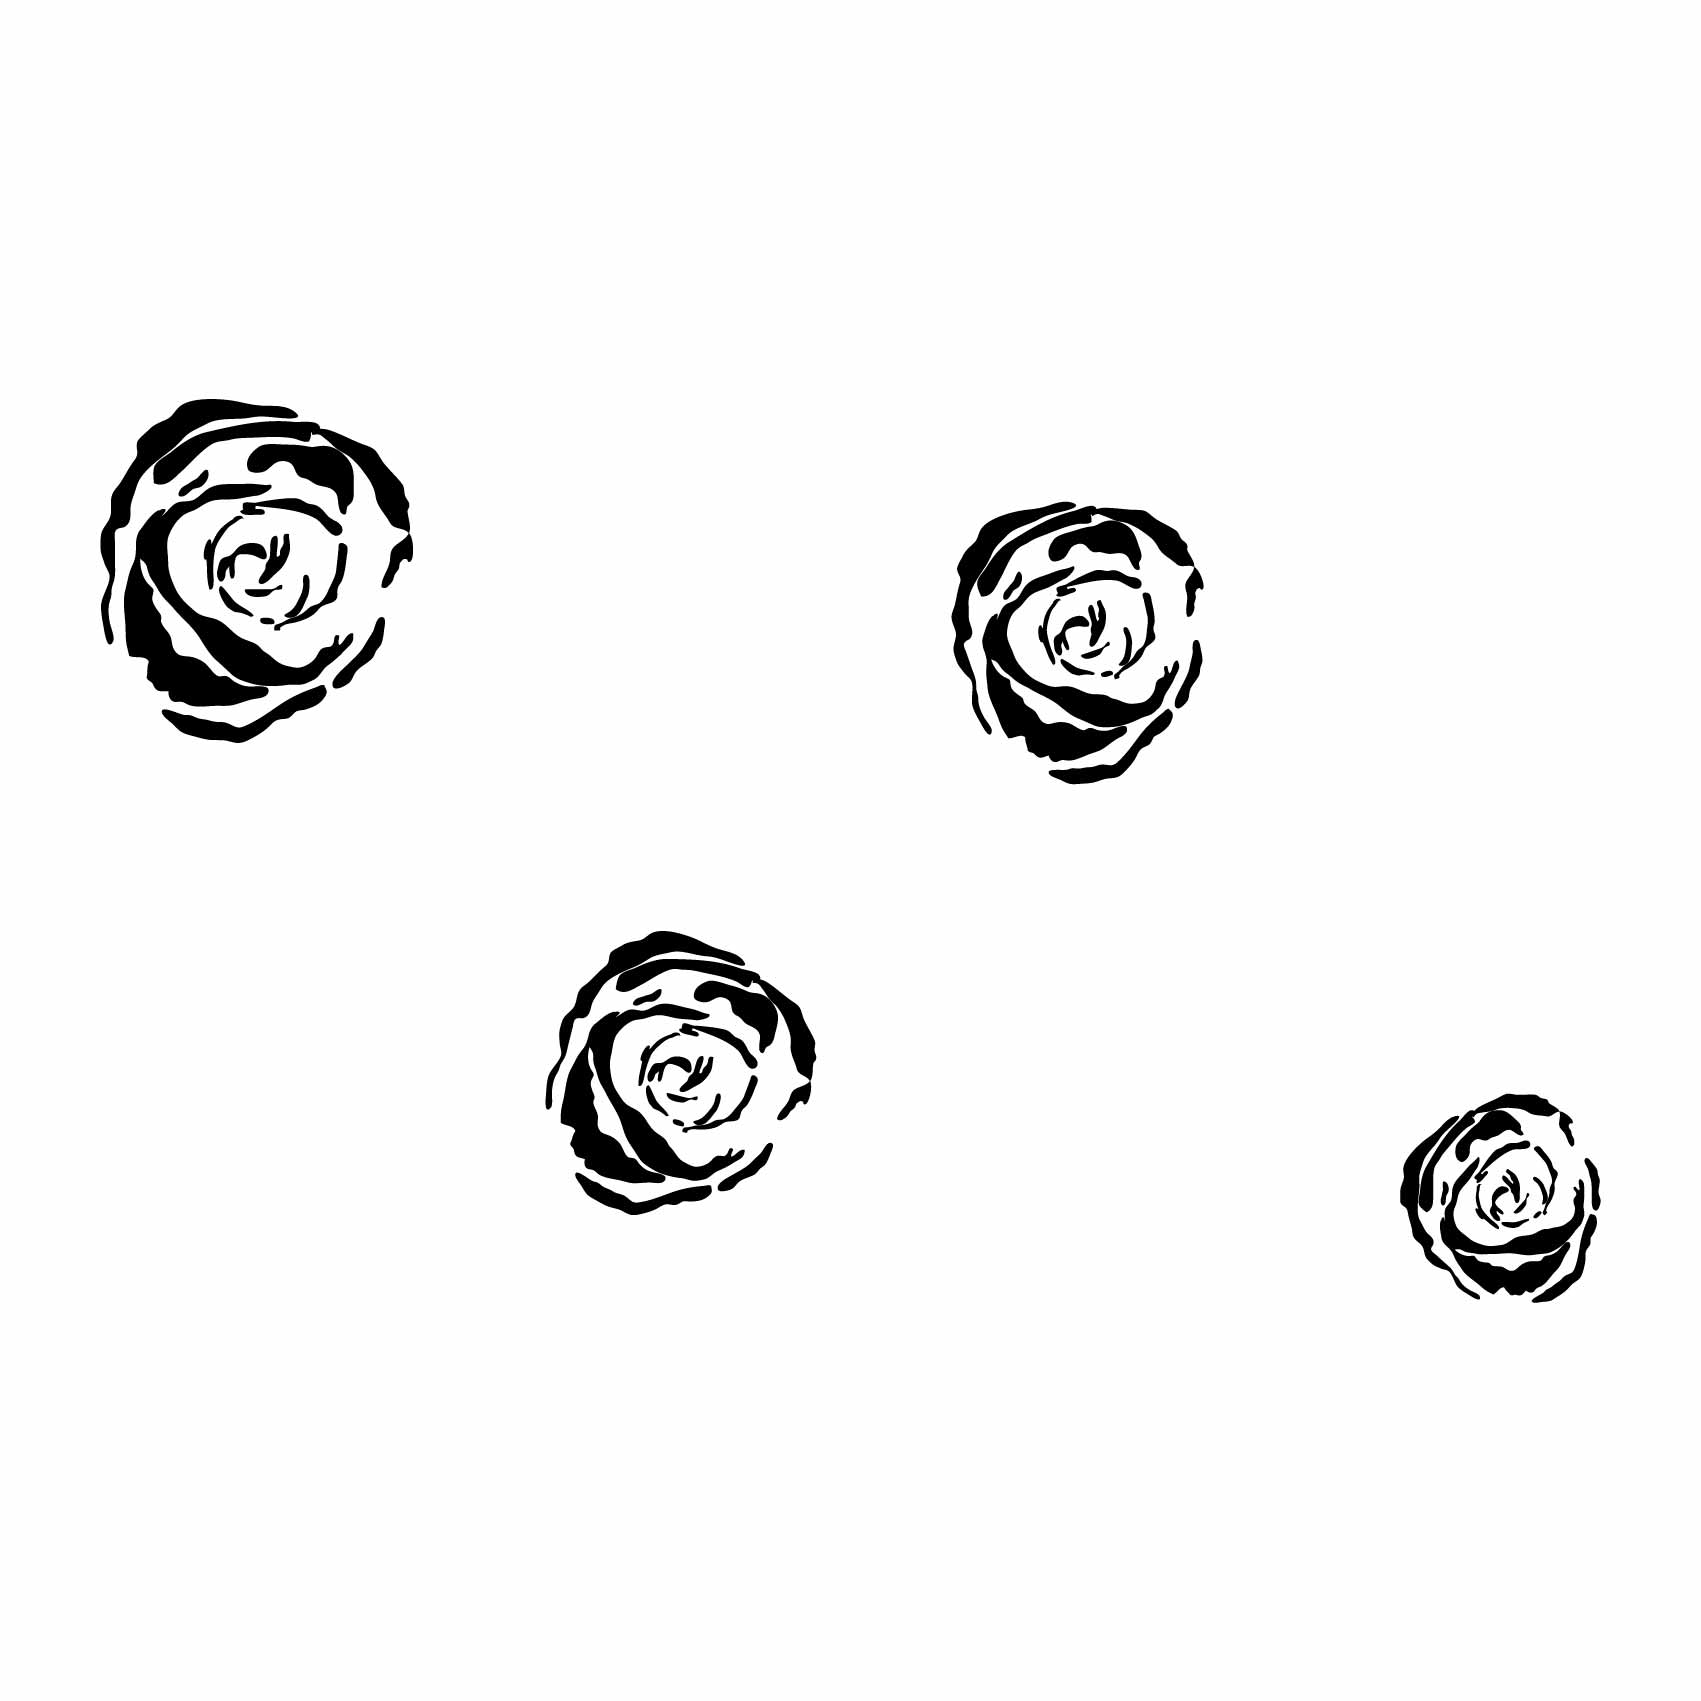 stickers-roses-ref2fleur-stickers-muraux-fleurs-autocollant-deco-salon-chambre-nature-sticker-mural-fleur-(2)